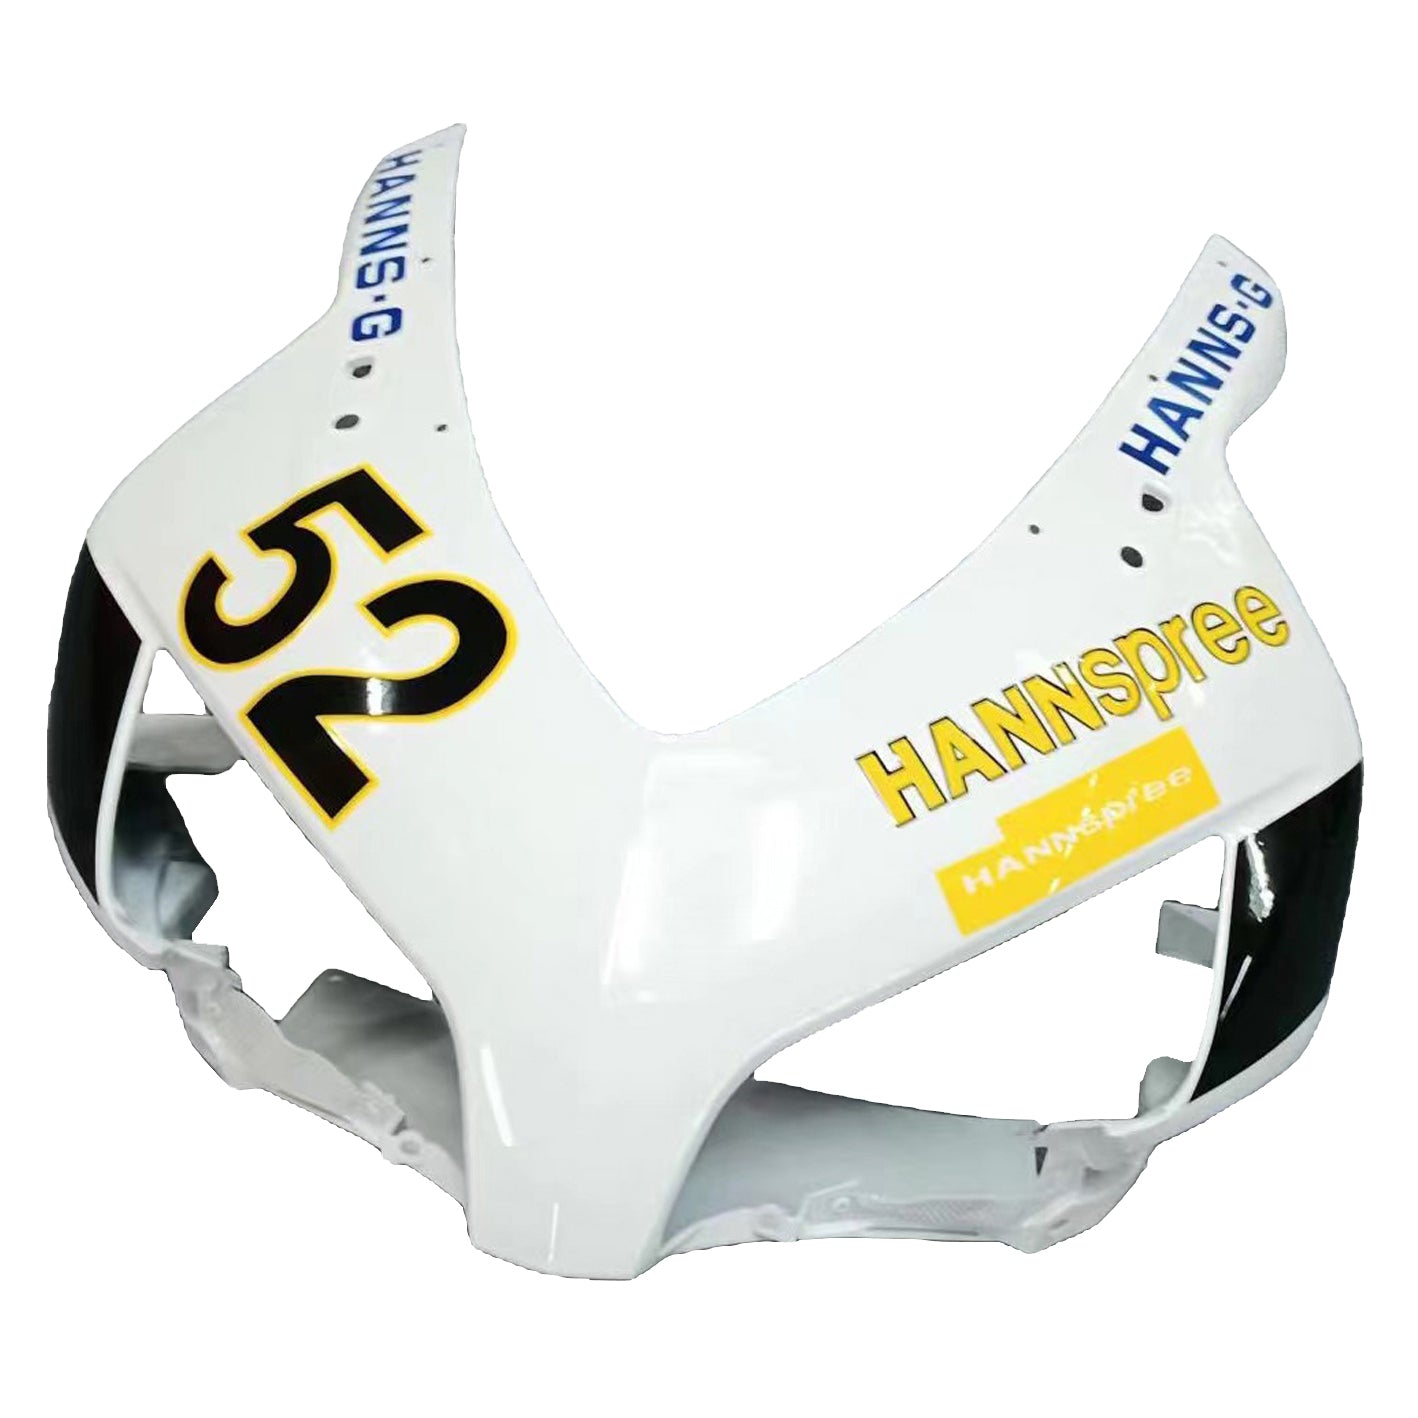 Amotopart Fairings Honda CBR1000RR 2004-2005 Fairing White Black Hannspree Racing Fairing Kit